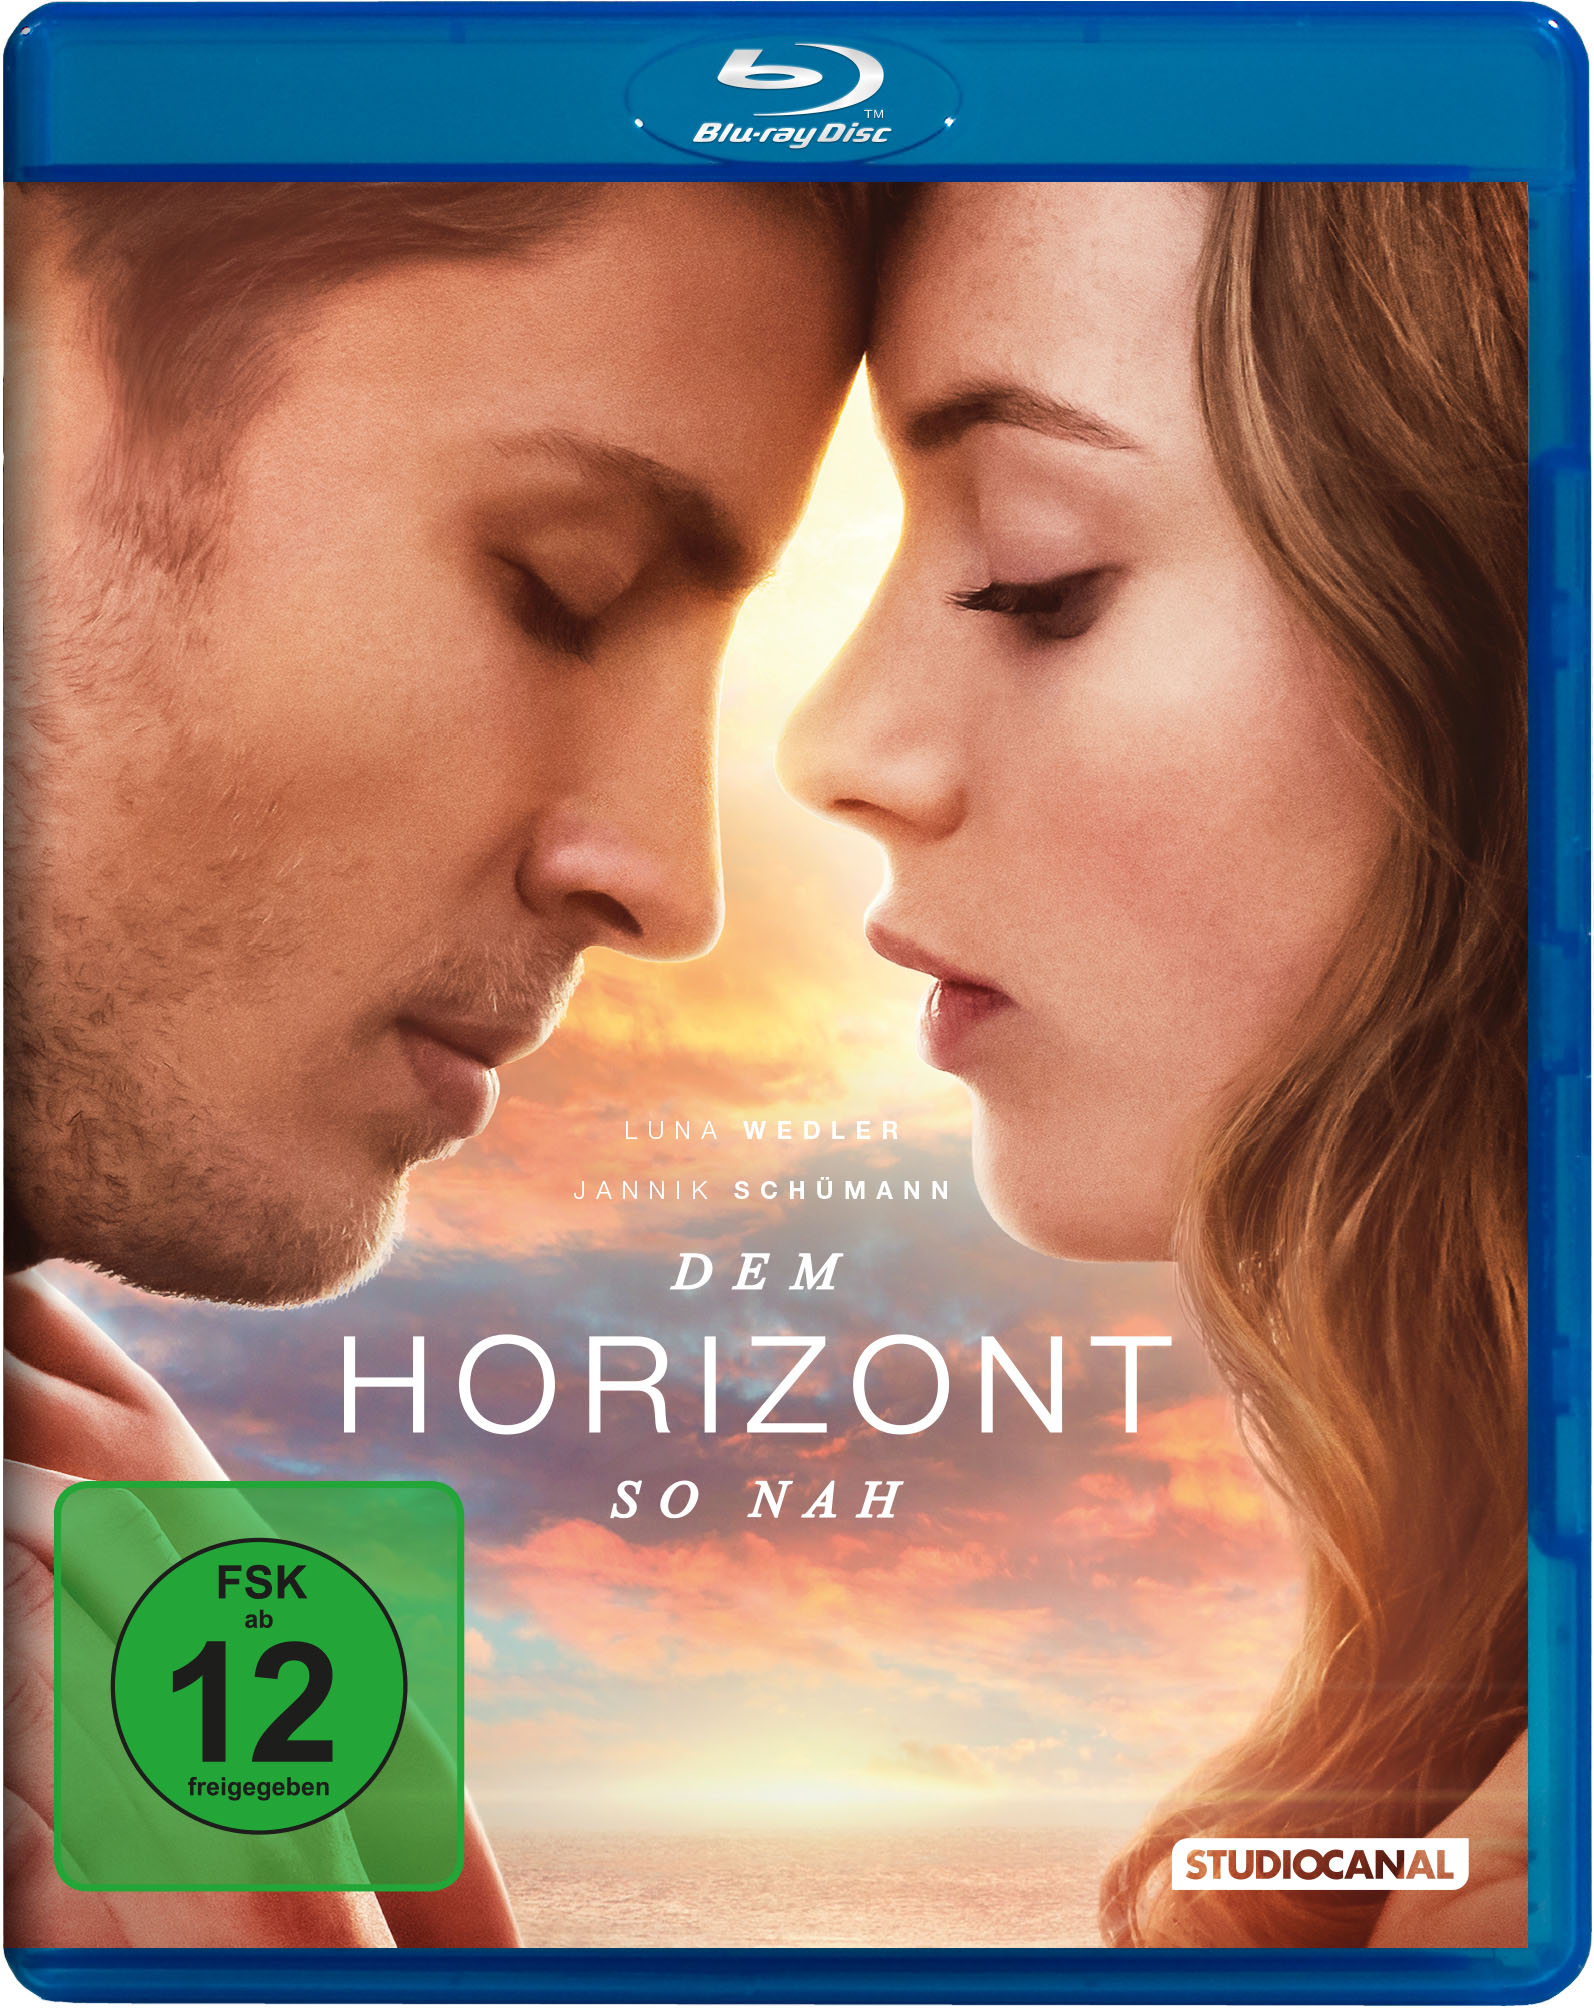 Horizont nah so Dem Blu-ray